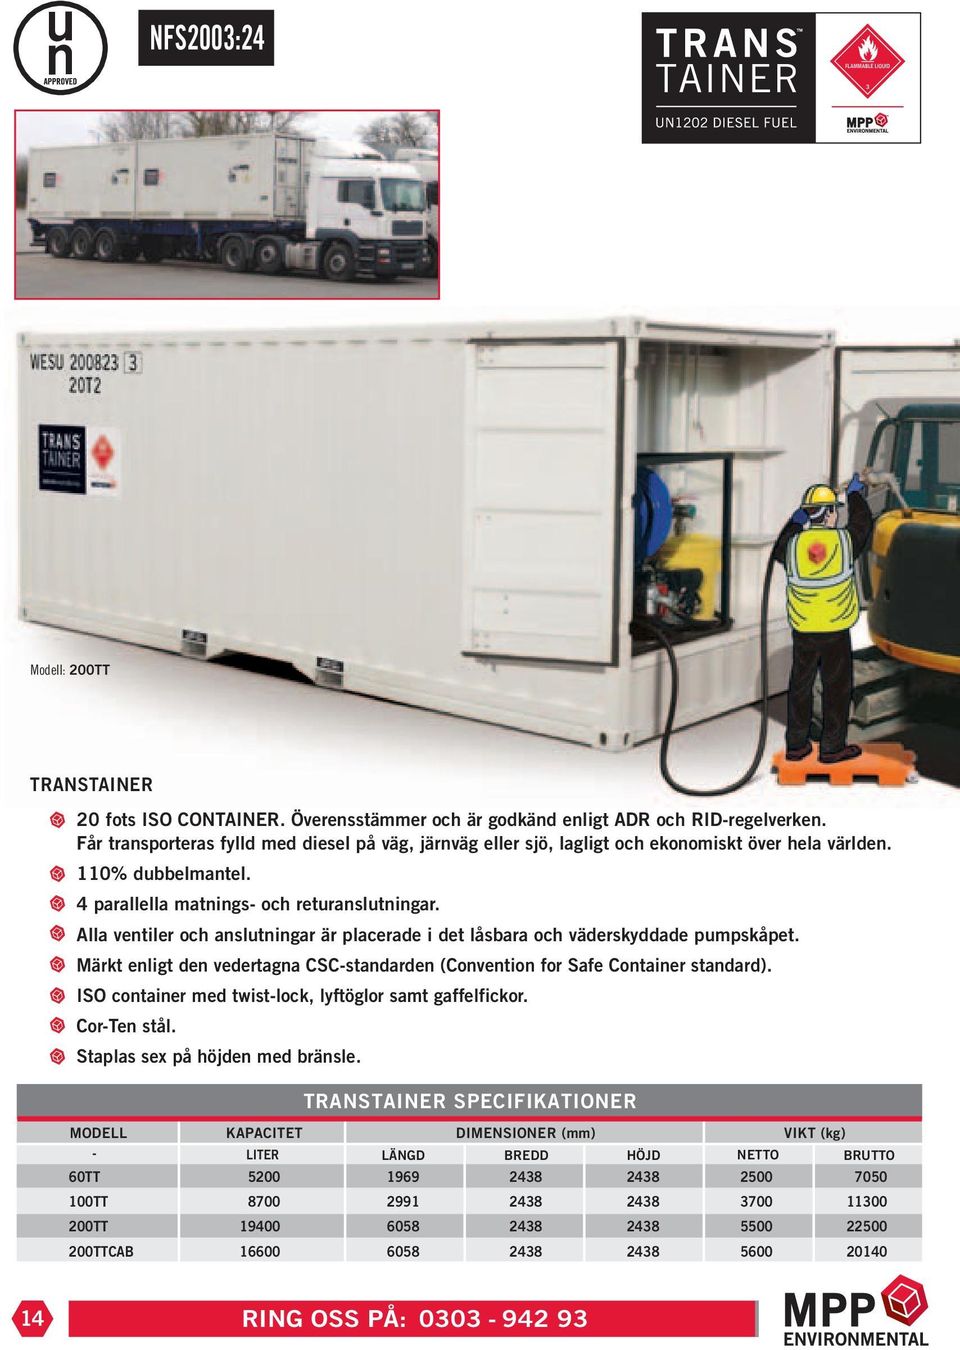 Alla ventiler och anslutningar är placerade i det låsbara och väderskyddade pumpskåpet. Märkt enligt den vedertagna CSC-standarden (Convention for Safe Container standard).